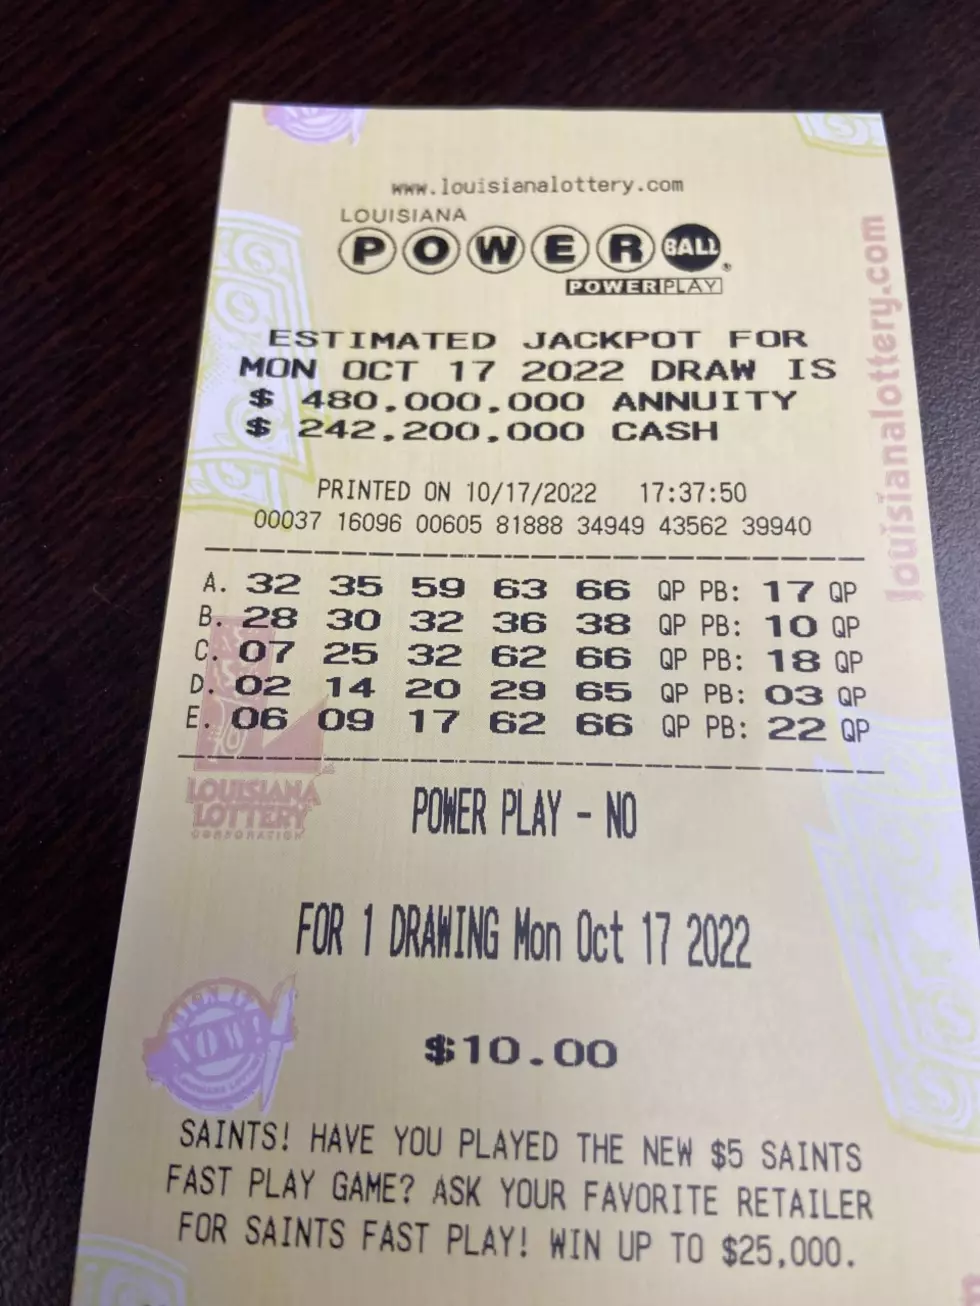 Did Anyone from Louisiana Hit Powerball Jackpot?